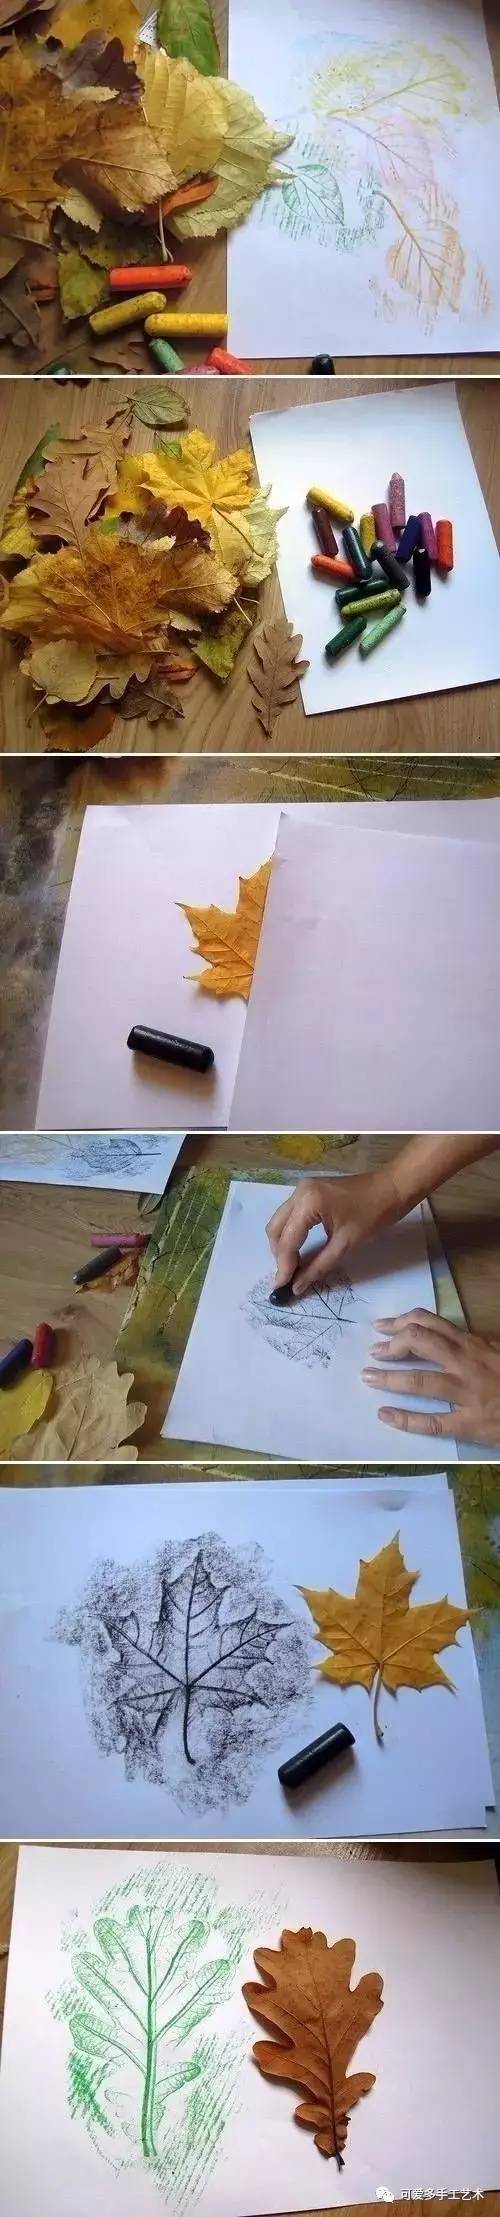 或丙烯颜料,然后印在纸上,印完之后把叶子揭下,一张树叶画就画好啦